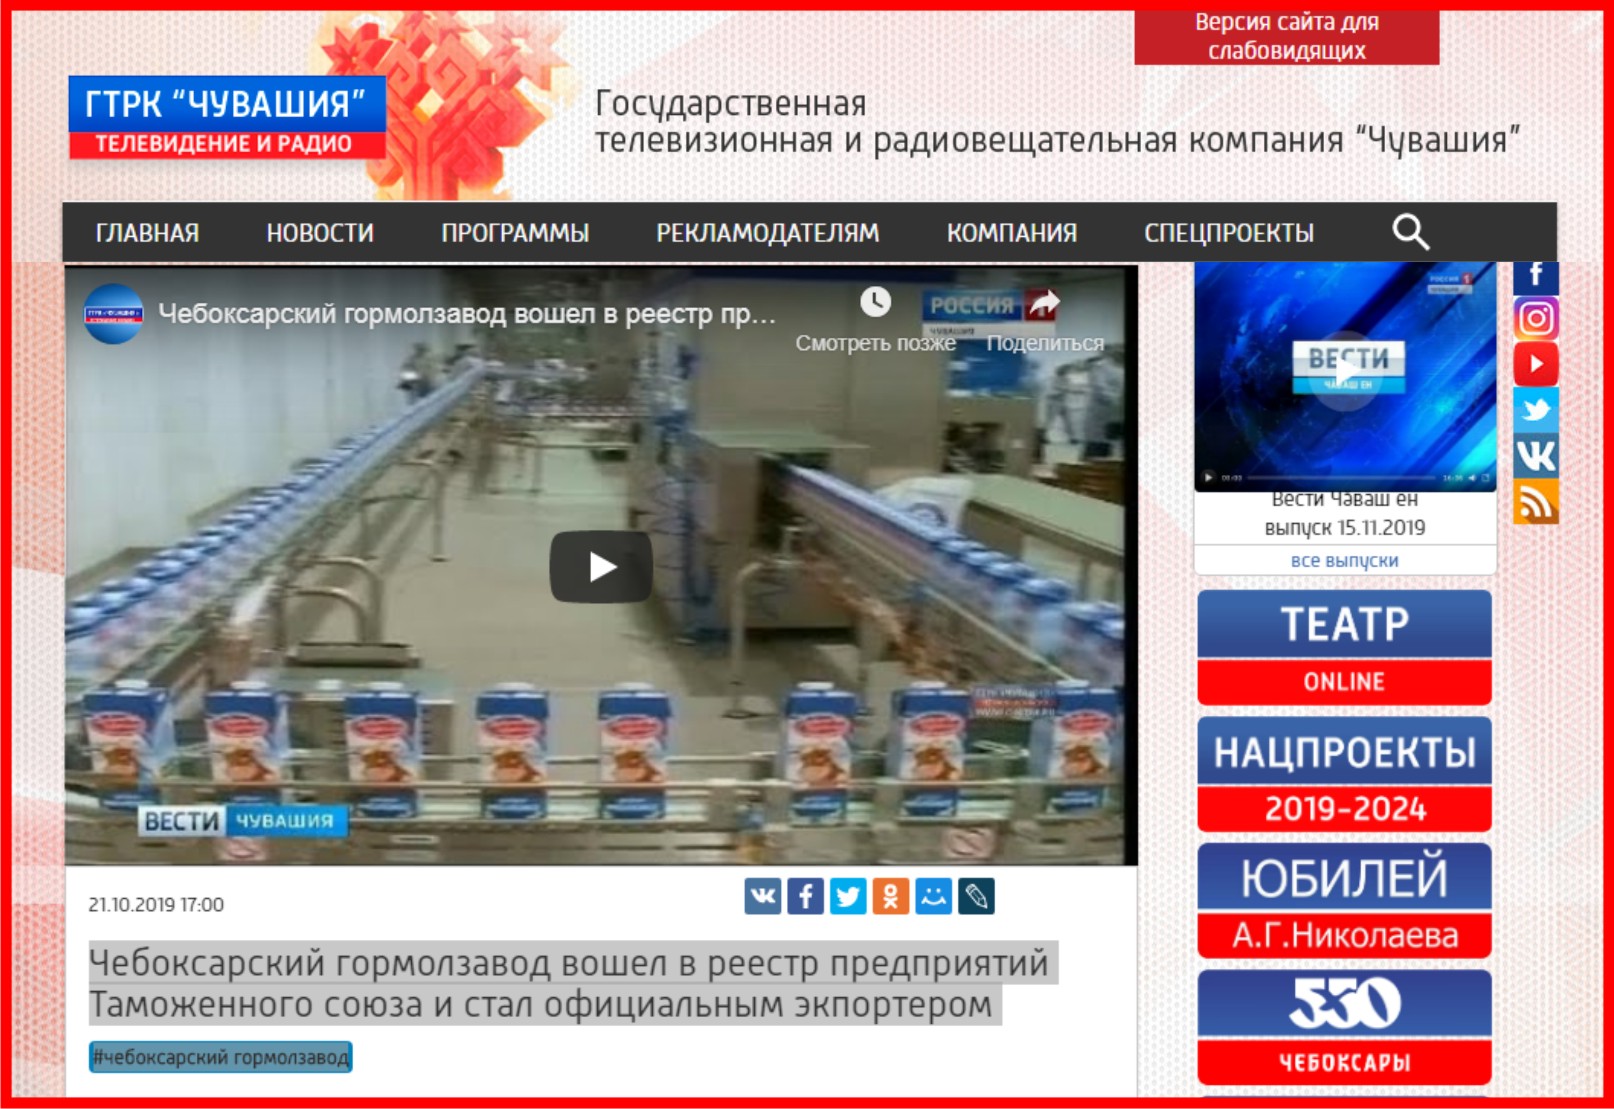 Чебоксарский гормолзавод вошел в реестр предприятий Таможенного союза и стал официальным экспортером!